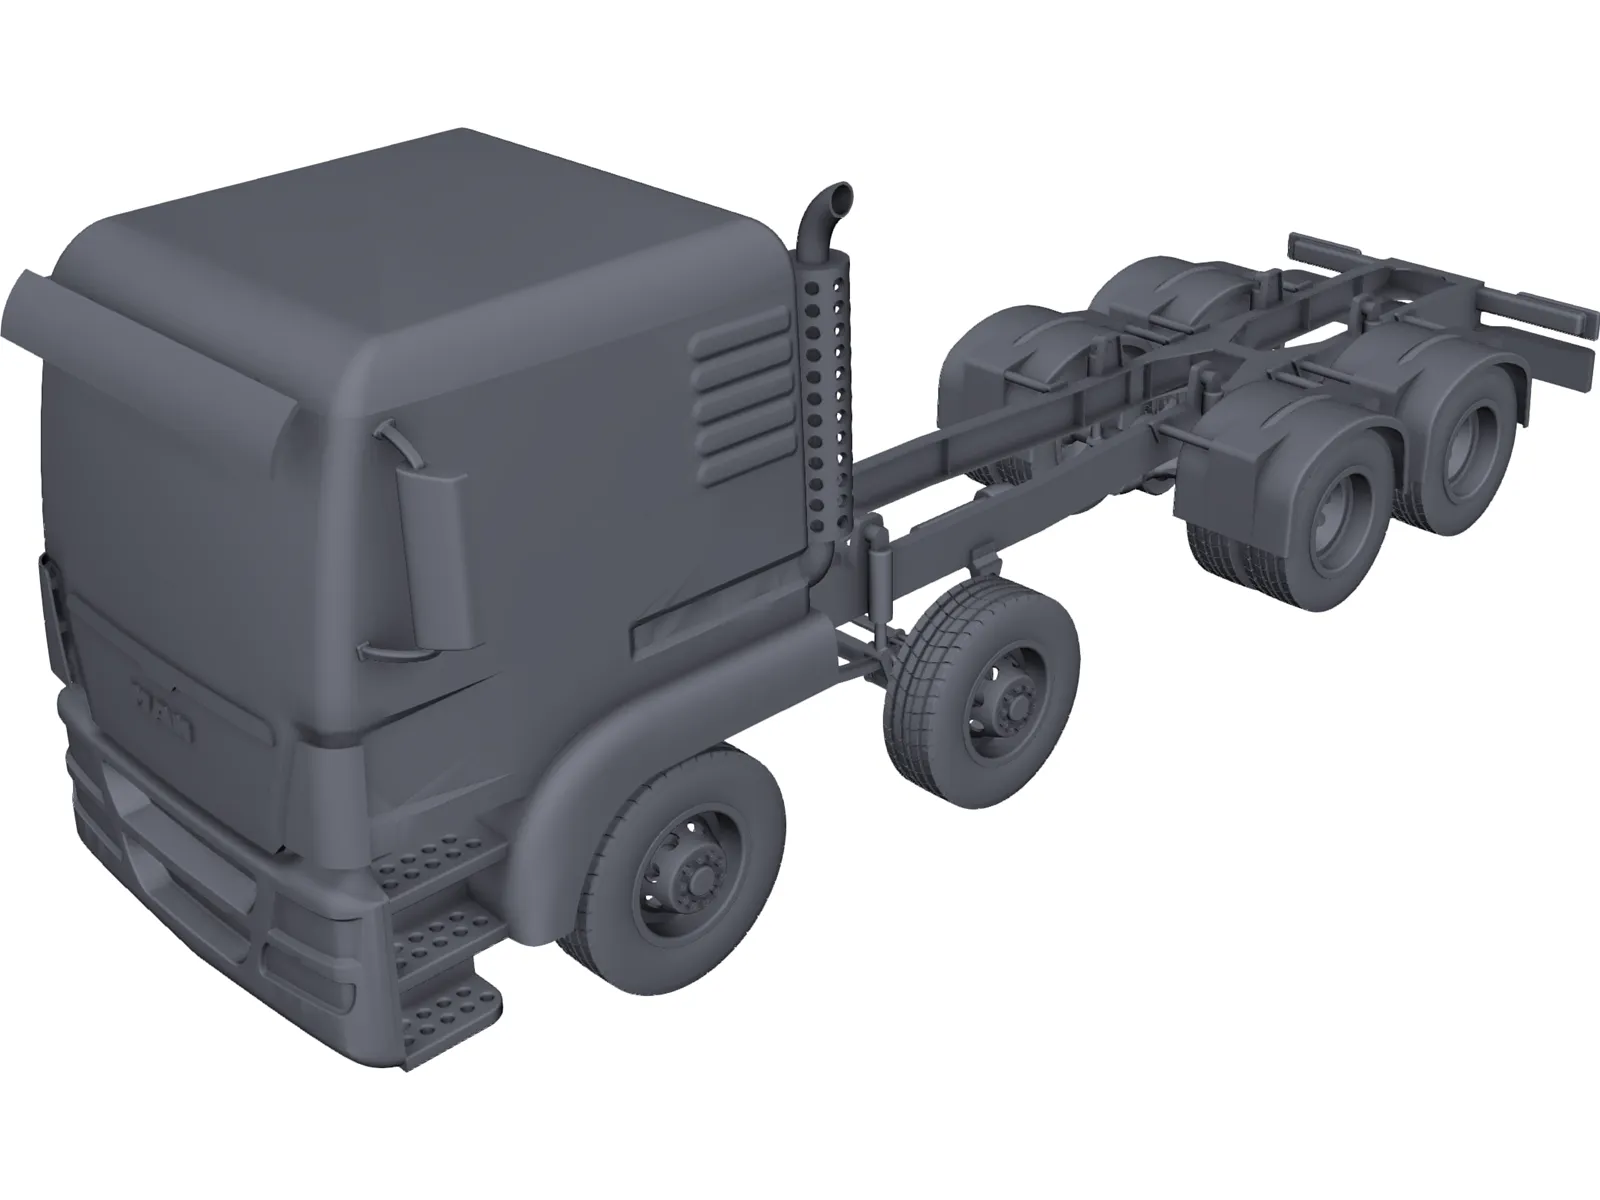 MAN TGS Truck 8x4 3D Model